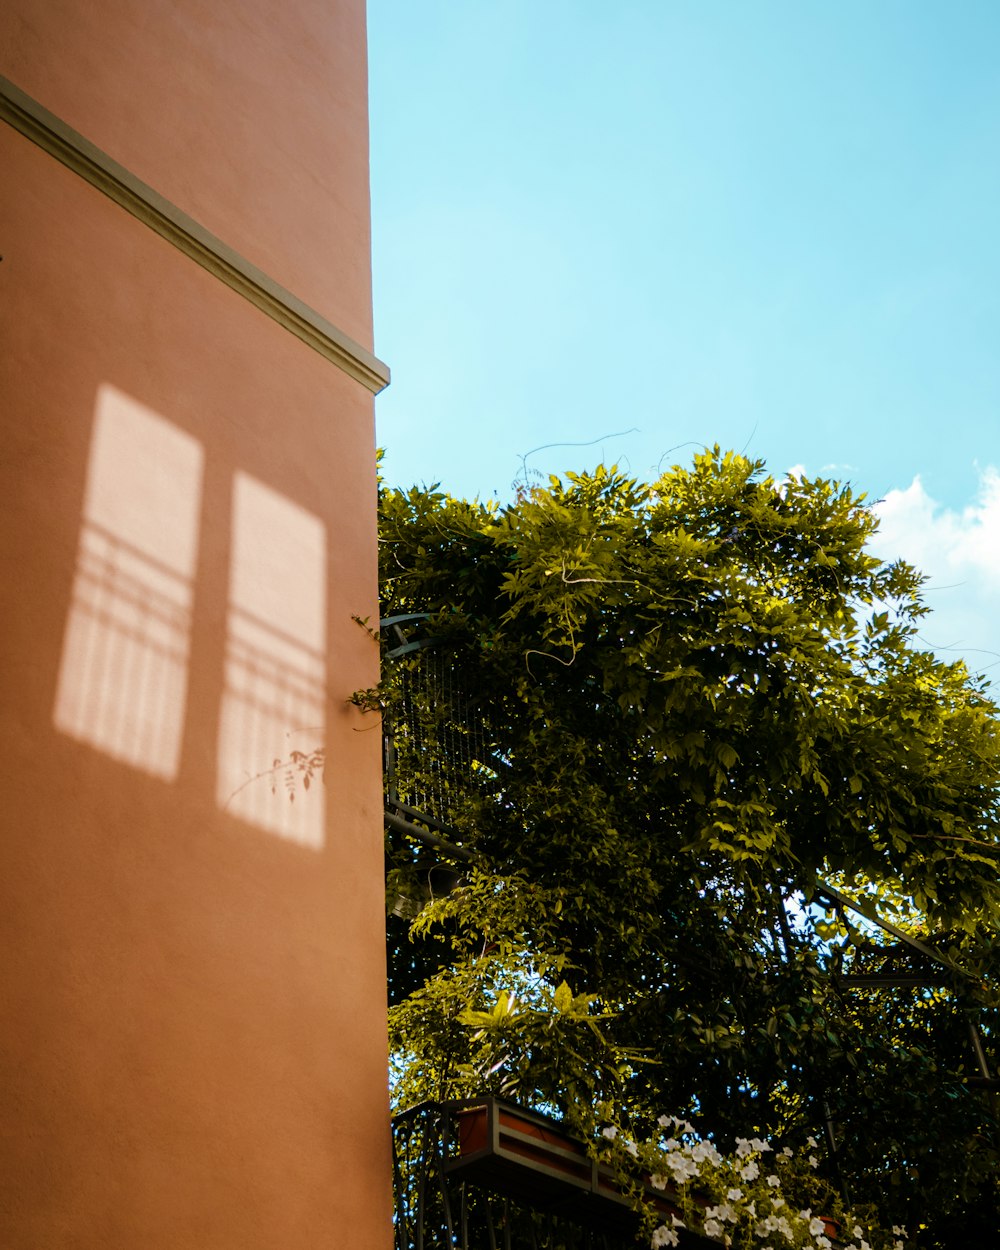 La sombra de un edificio en el lado de un árbol